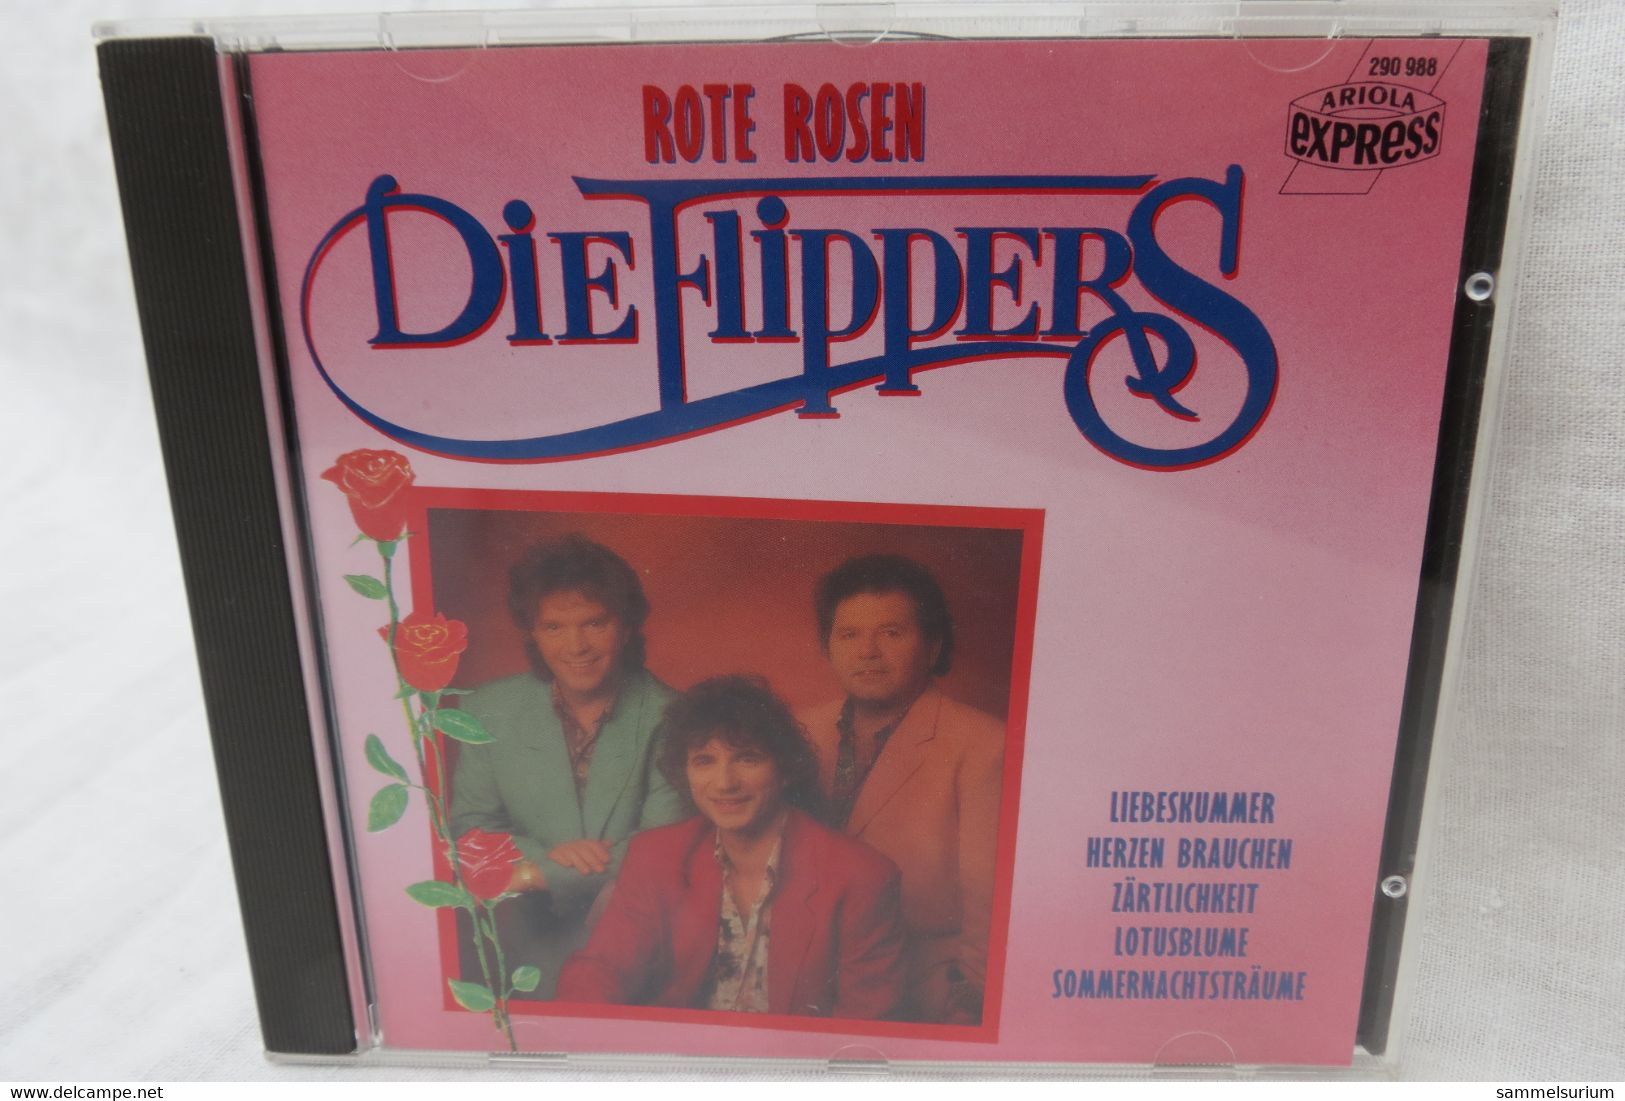 CD "Die Flippers" Rote Rosen - Other - German Music